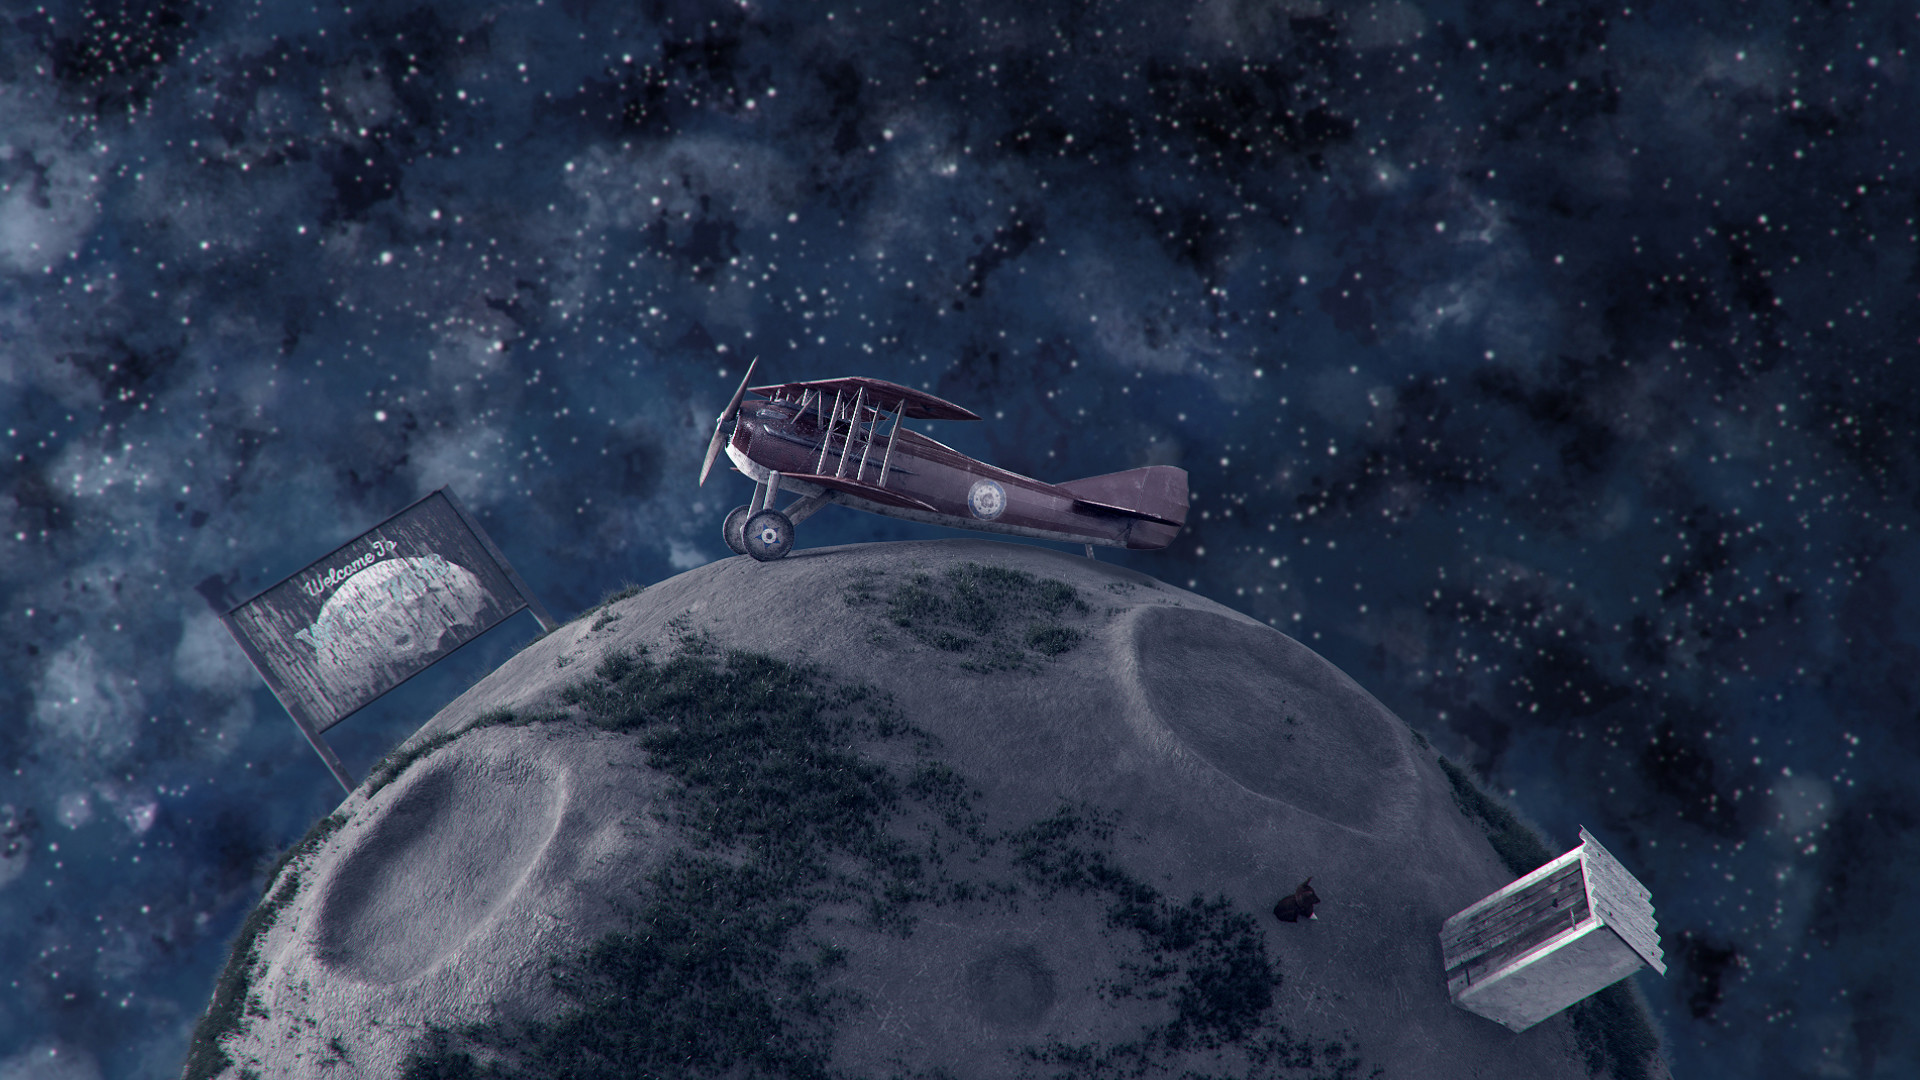 zoltan-maroti-asteroid-scene-002b-fin-lc